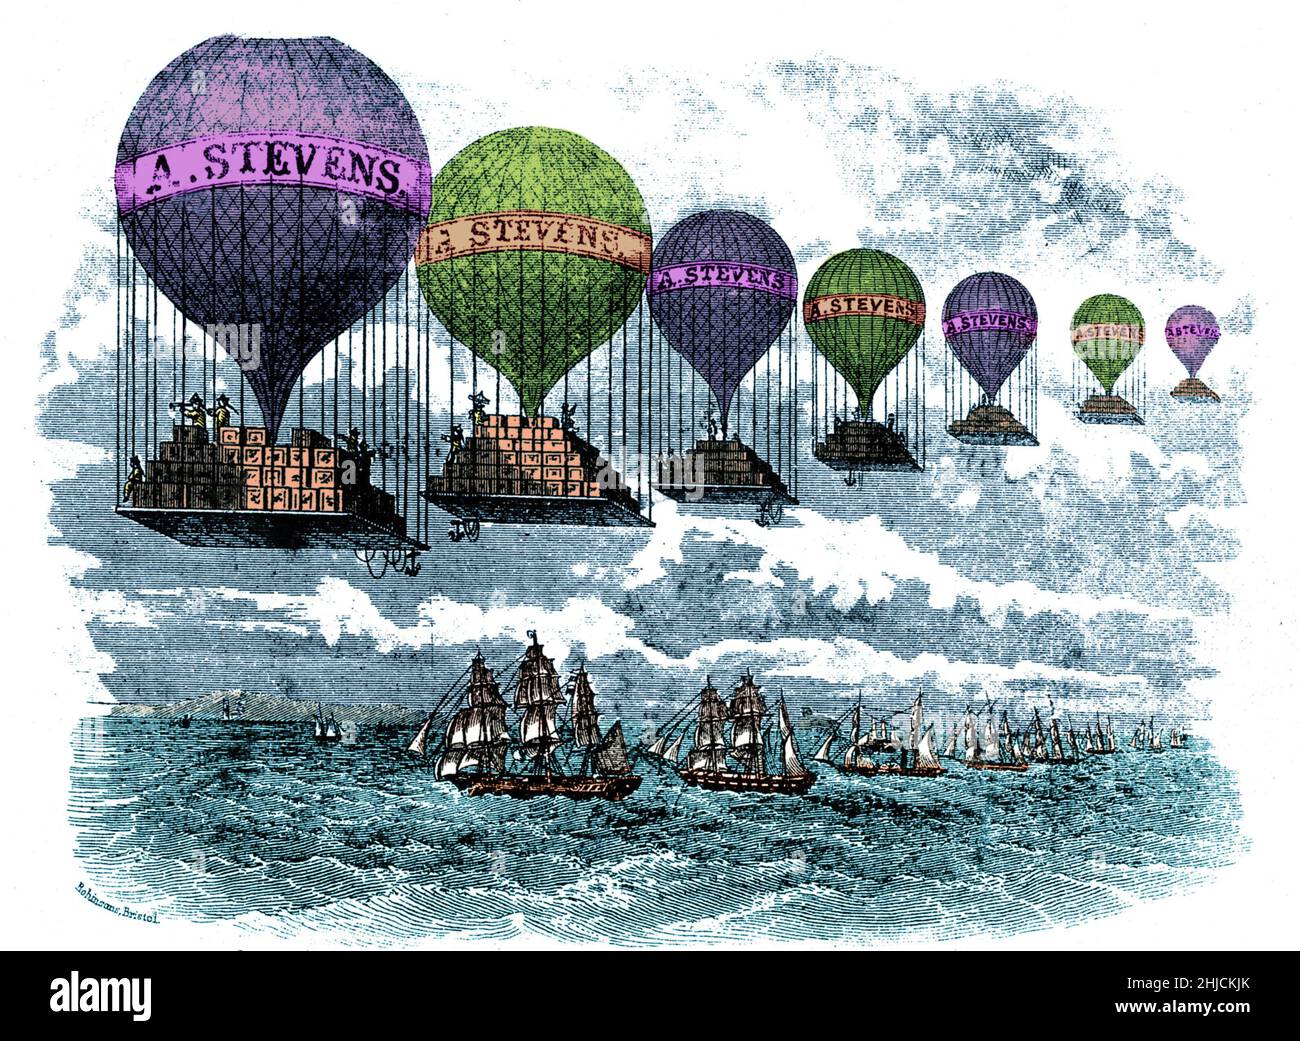 Eine Holzgravur aus dem 19th. Jahrhundert einer Reihe von Heißluftballons, die mit Kartons beladen sind und für „A.. Stevens und unterwegs über eine Reihe von Segelschiffen. Farbverstärkter. Stockfoto